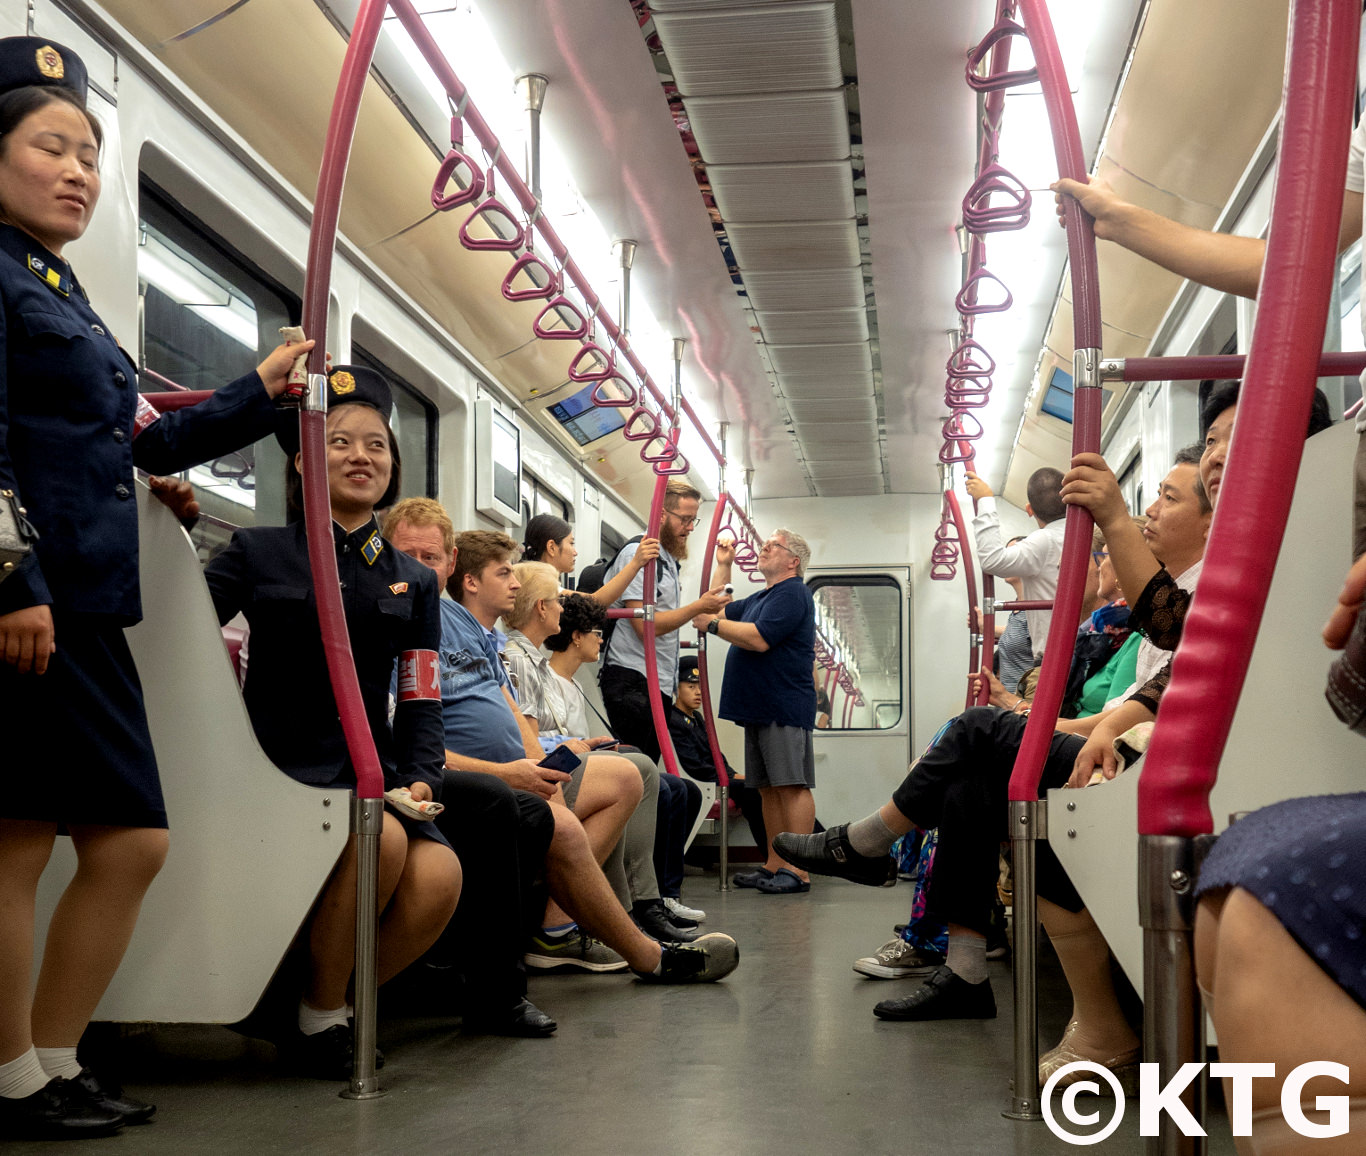 Trabajadores del metro tomando tren en el metro de Pyongyang. Este tren es el nuevo hecho en Corea. Viaje a Corea del Norte organizado por KTG Tours